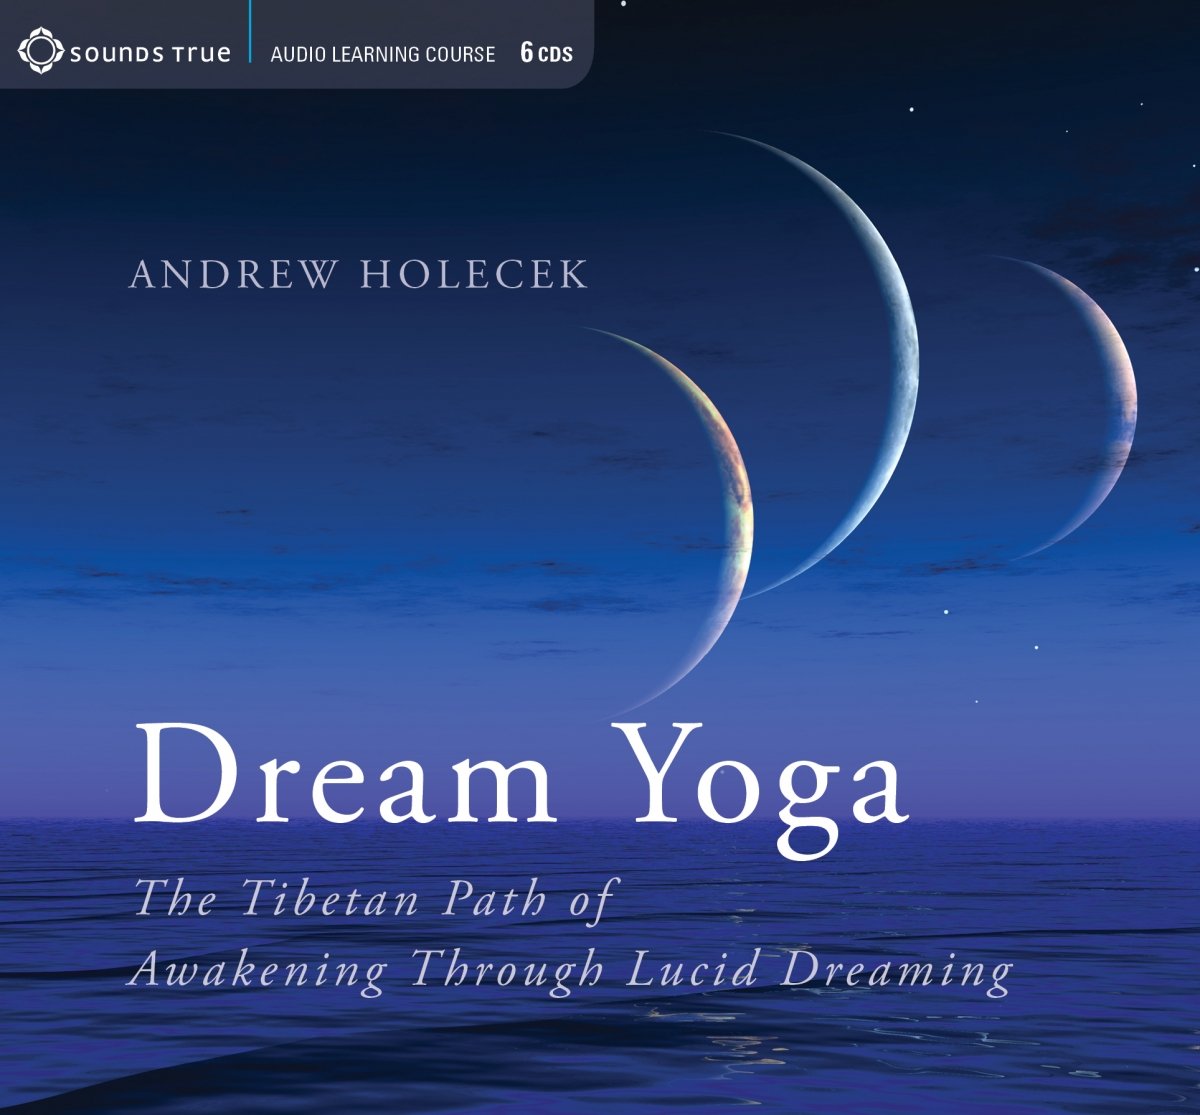 Andrew Holecek - Dream Yoga, The Tibetan Path of Awakening Through Lucid Dreaming